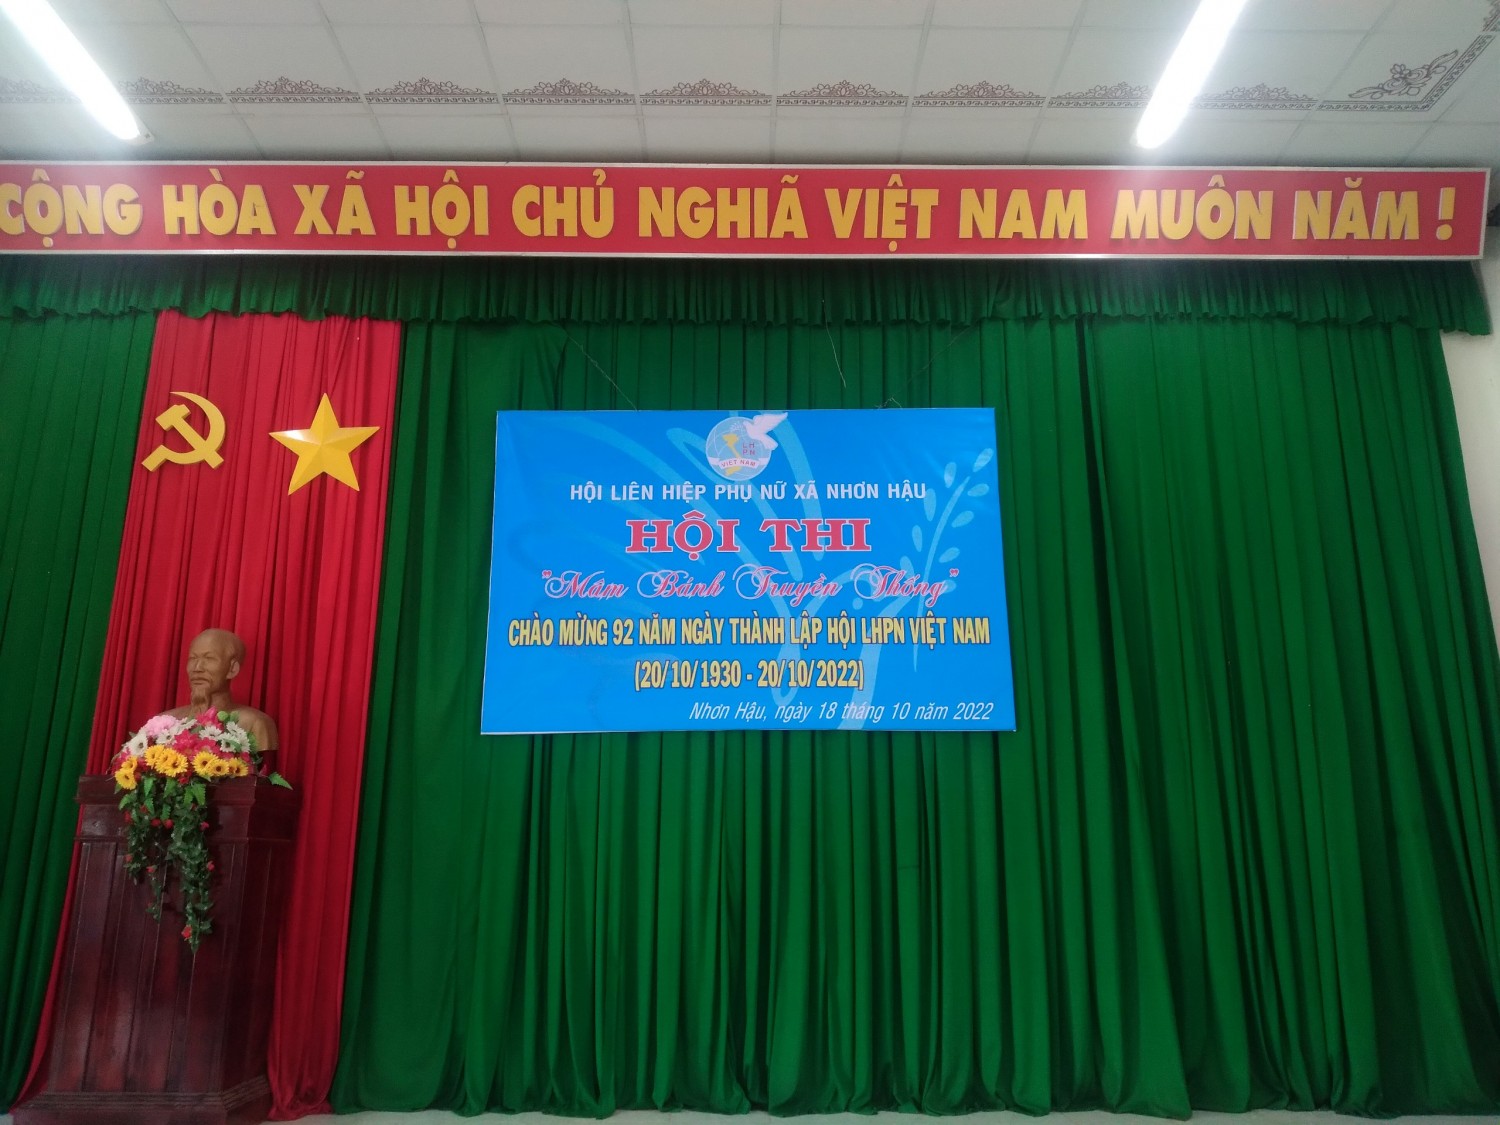 Nhân 92 năm ngày thành lập hội LHPN Việt Nam (20/10/1930-20/10/2022) Hội LHPN xã Nhơn Hậu tổ chức hội thi “mâm bánh truyền thống”